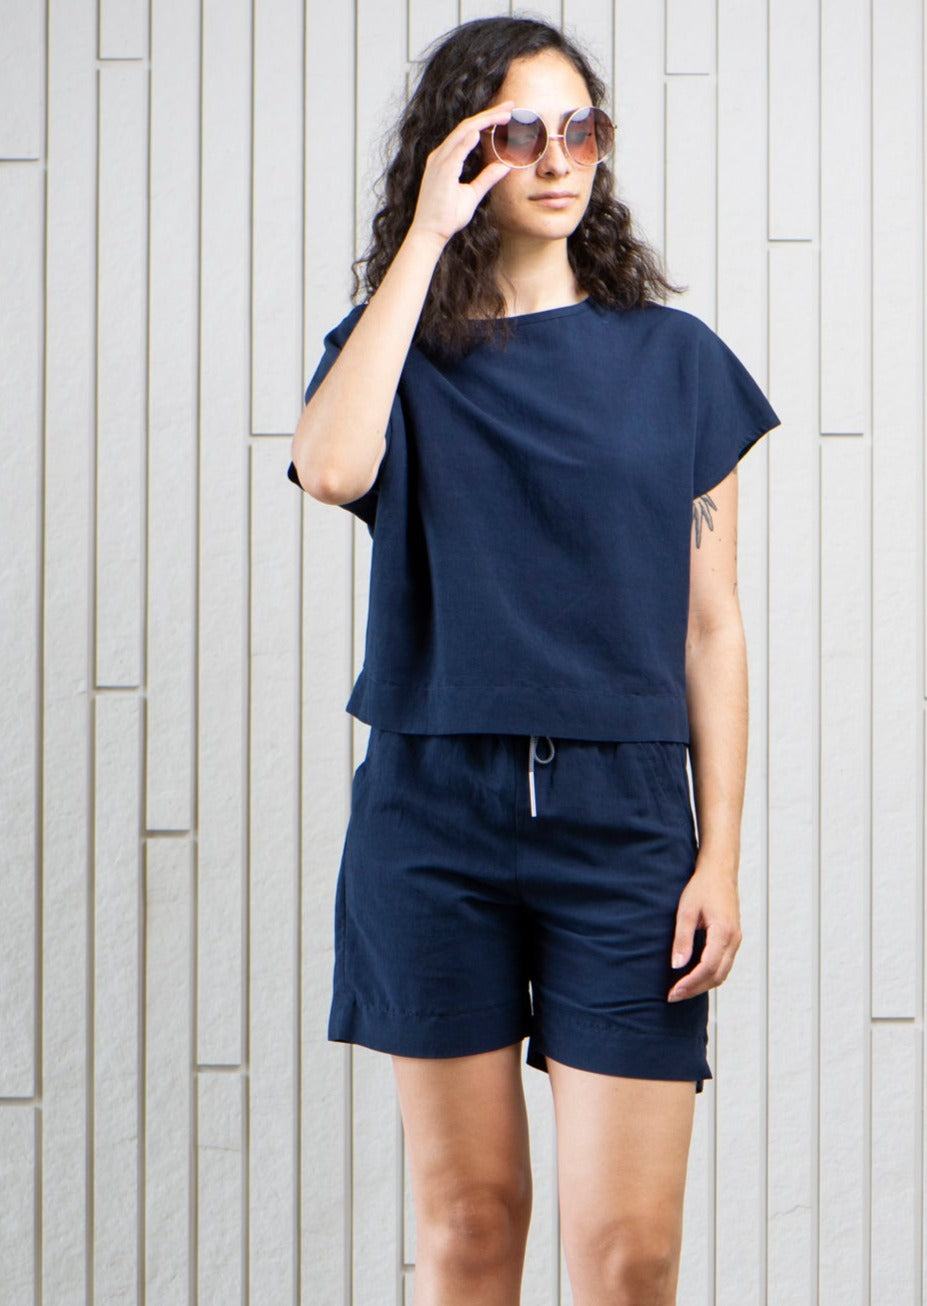 market-linen-shorts-pockets-Canadian-designer-navy